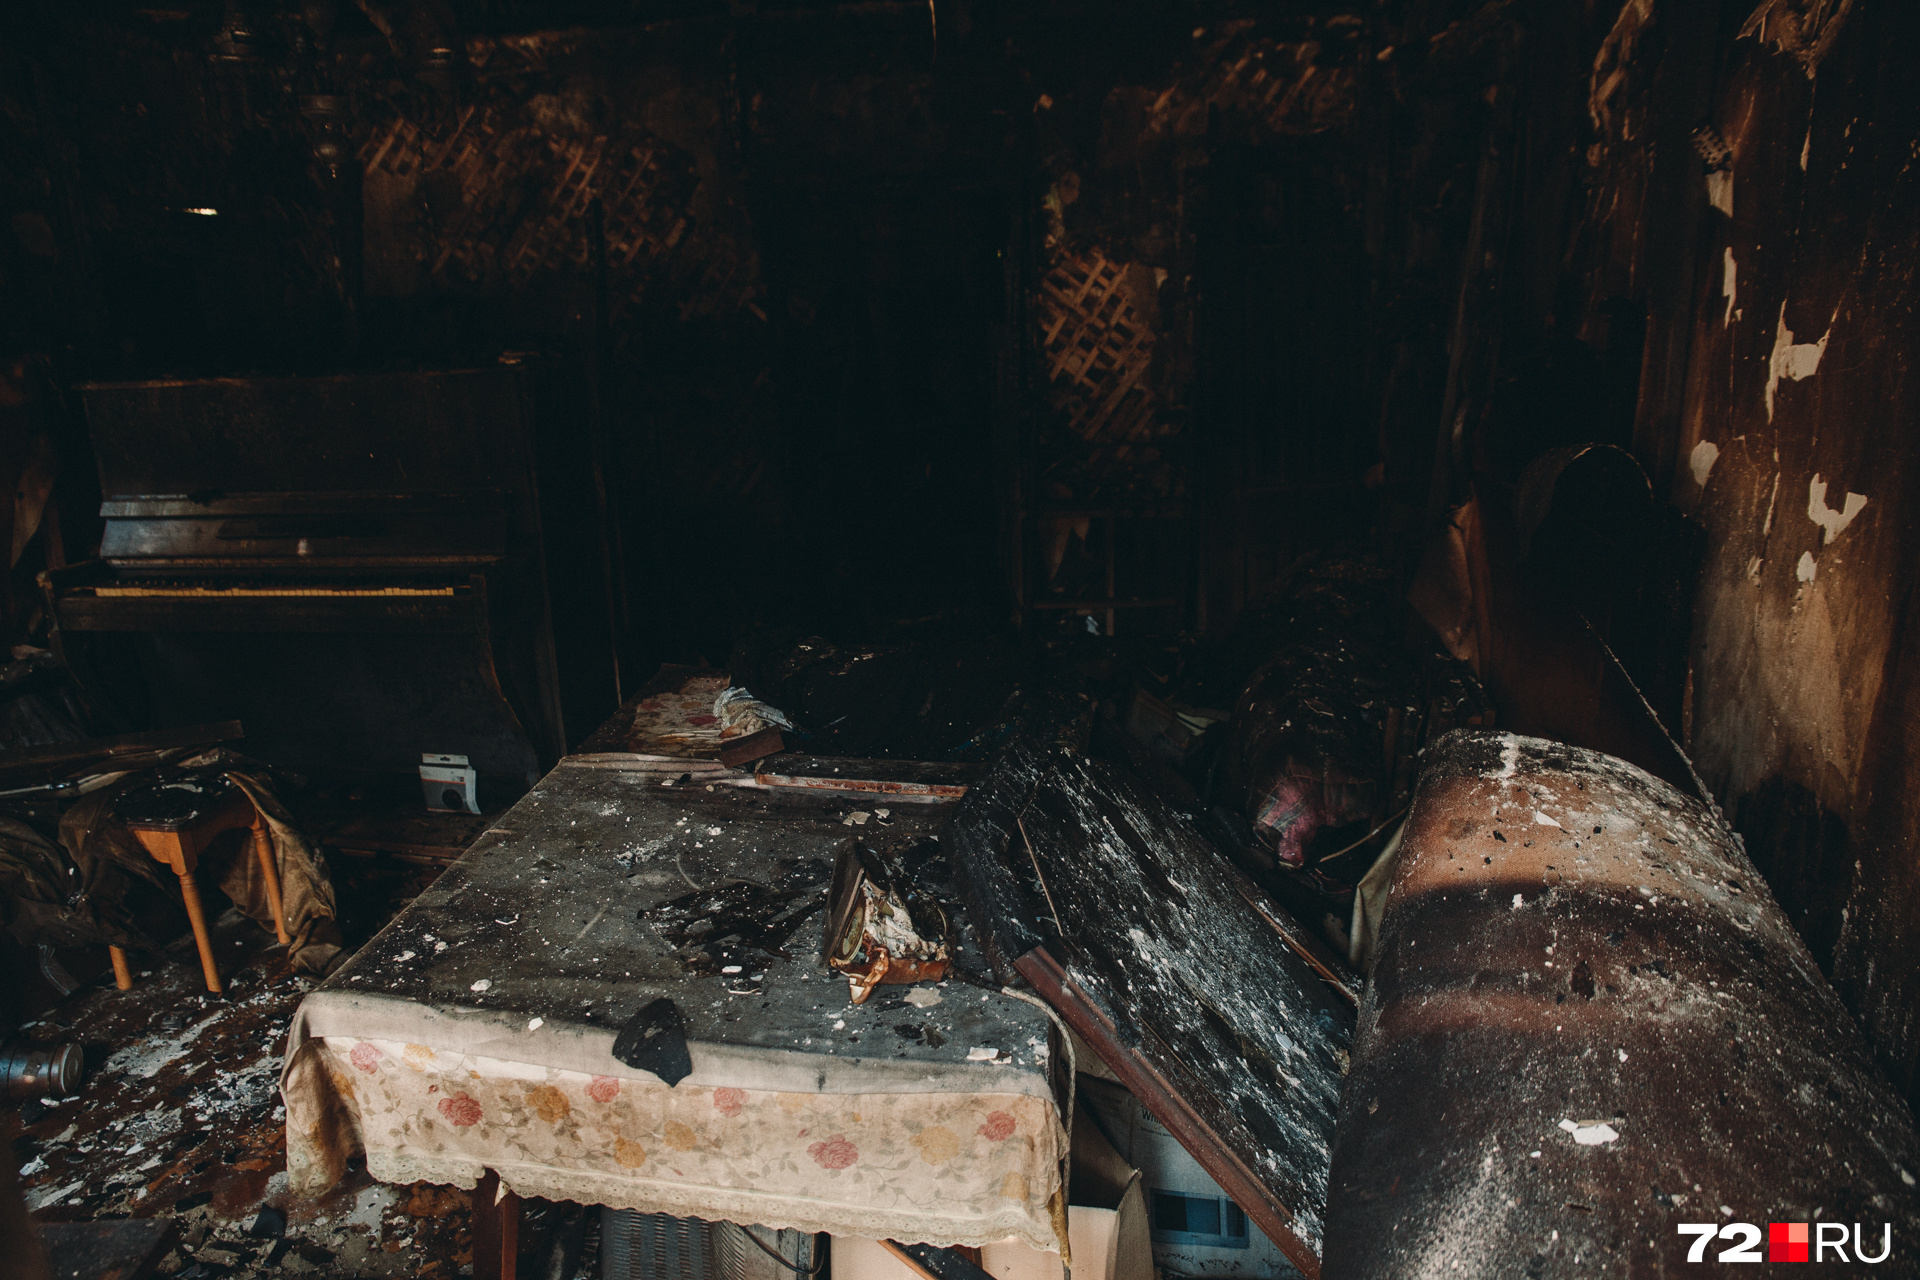 Дом № 33 на Осипенко обгорел полностью. Вряд ли кто-то его будет восстанавливать